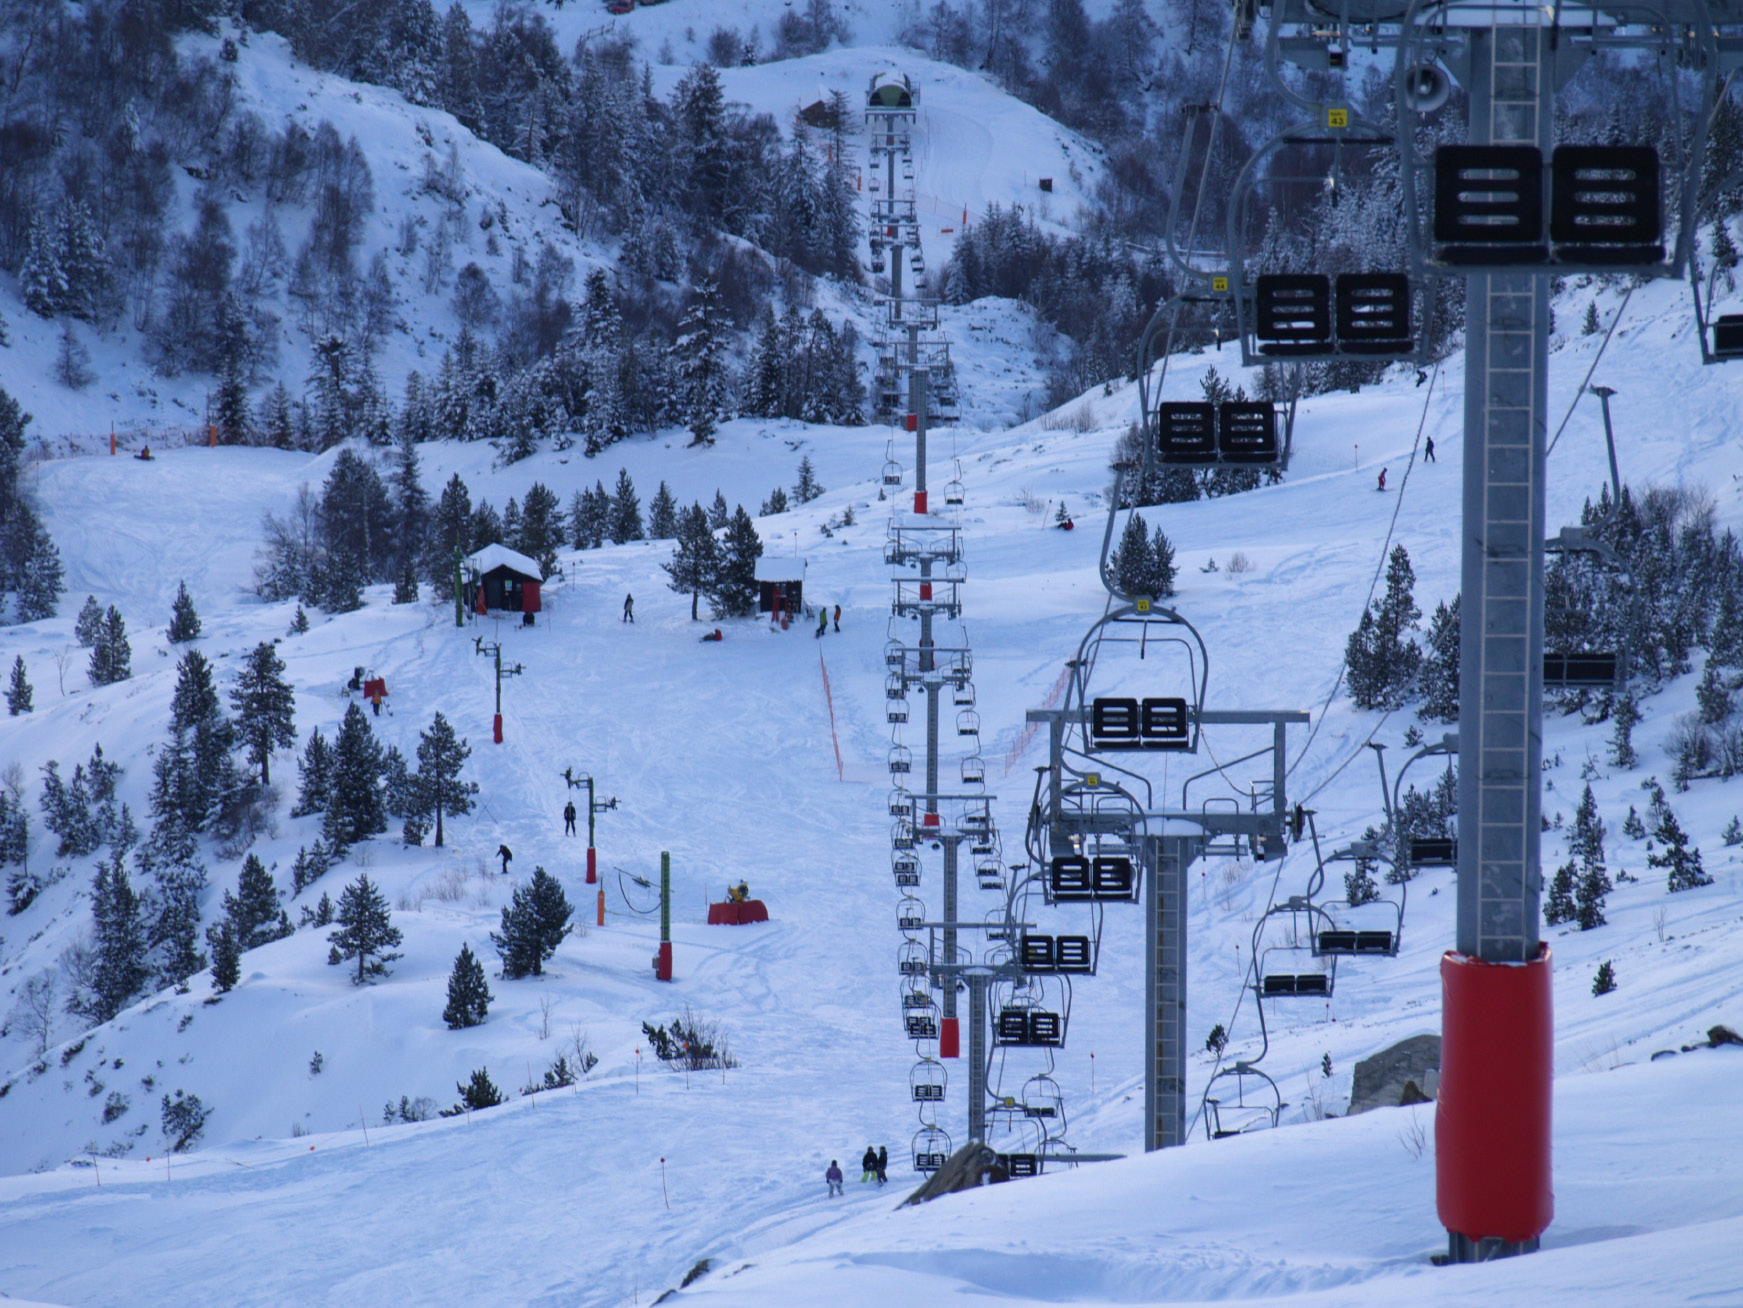 Los usuarios del forfait de temporada de Tavascan pueden esquiar en Espot y Port Ainé